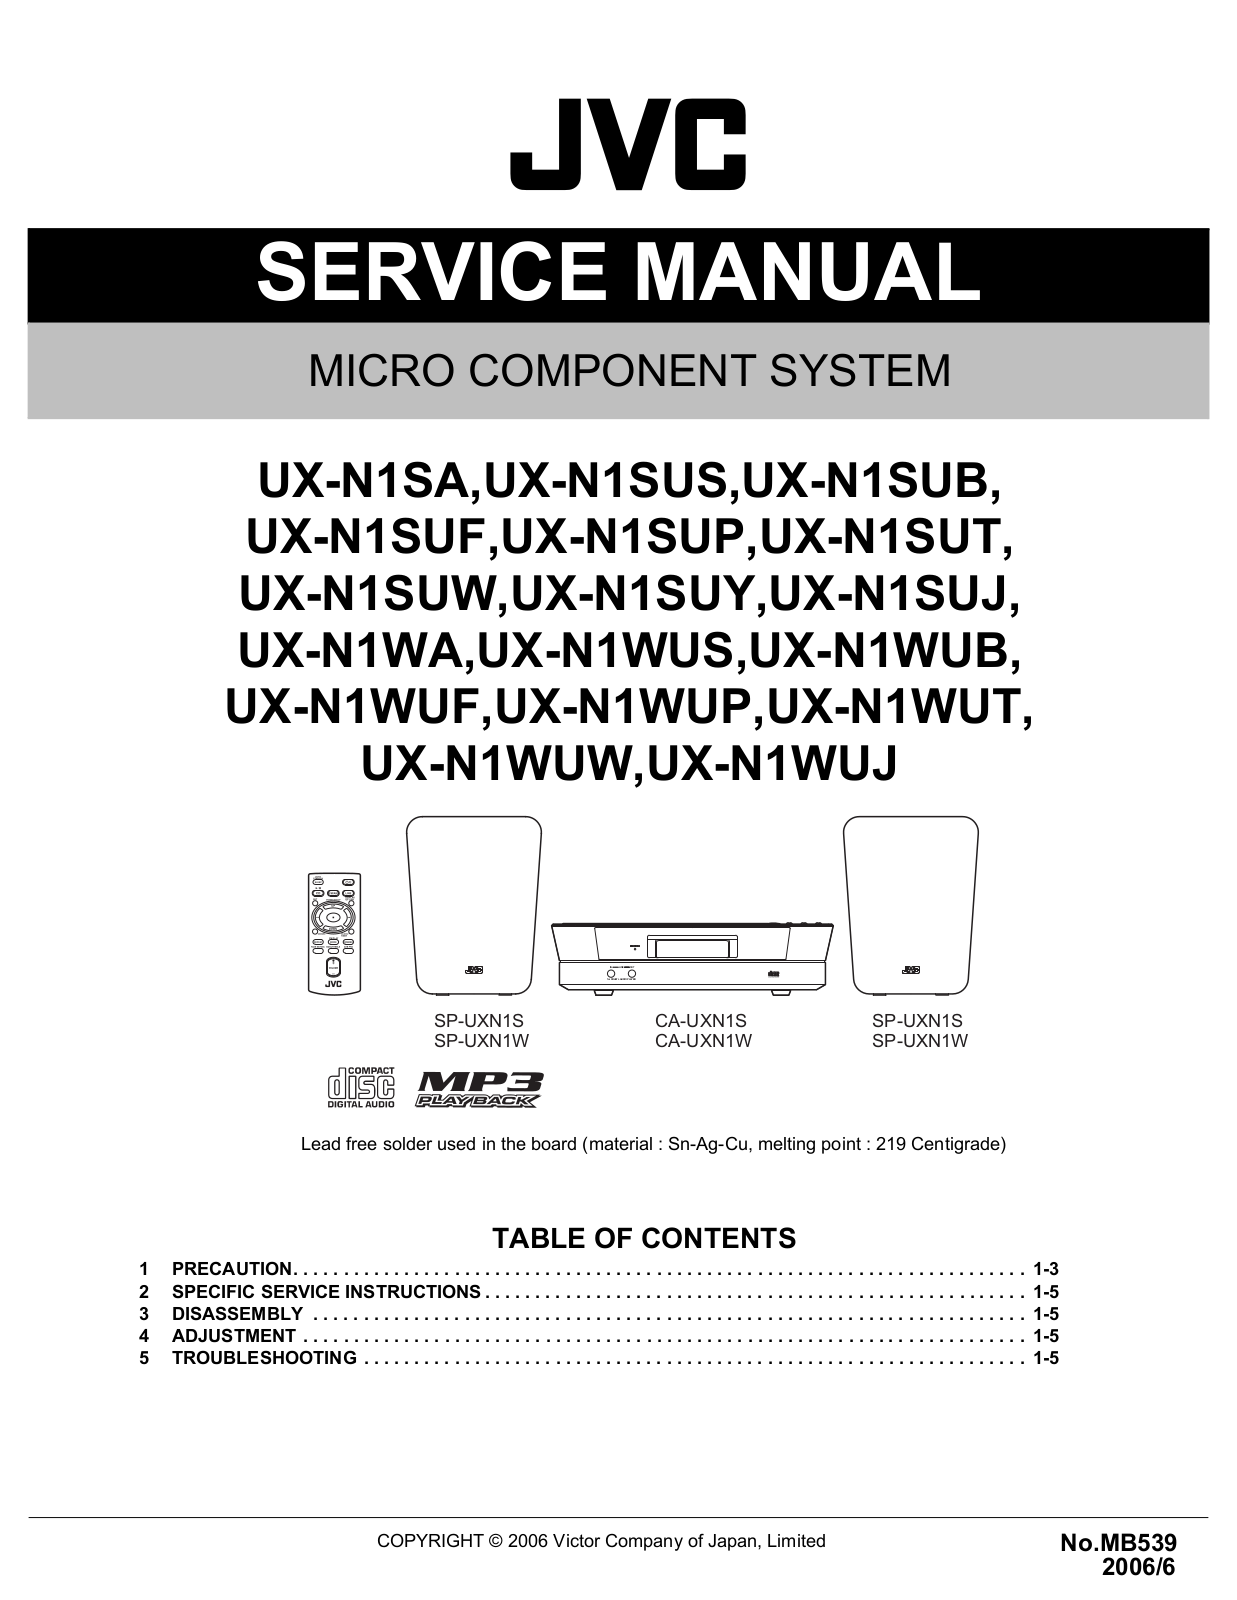 JVC UXN-1 Service manual